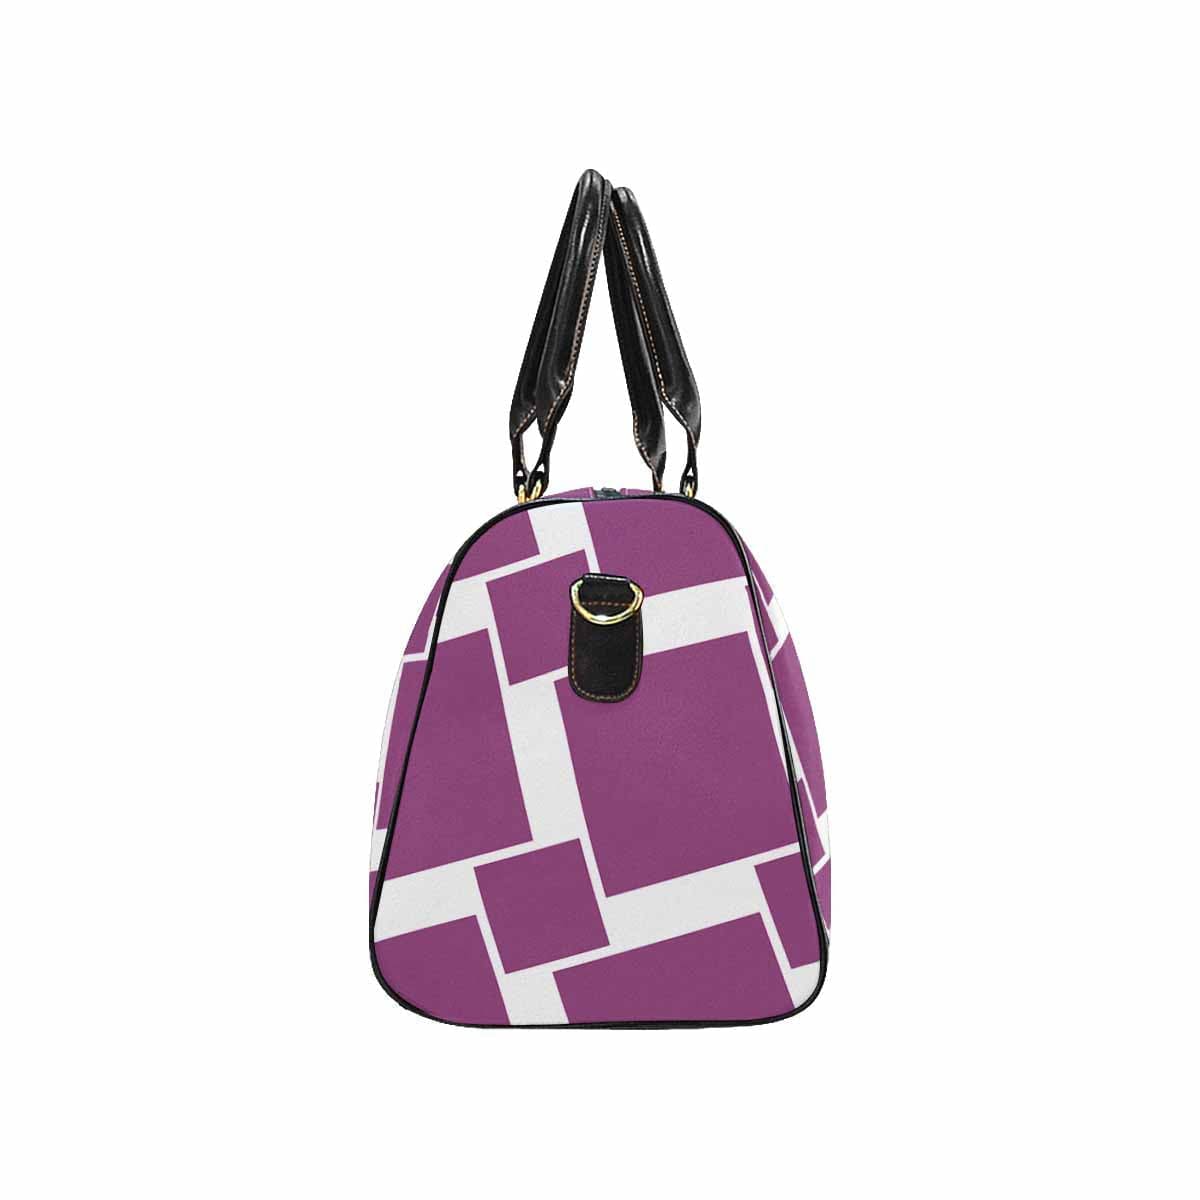 Travel Bag Adjustable Shoulder Strap Carry On Bag Purple - Bags | Travel Bags